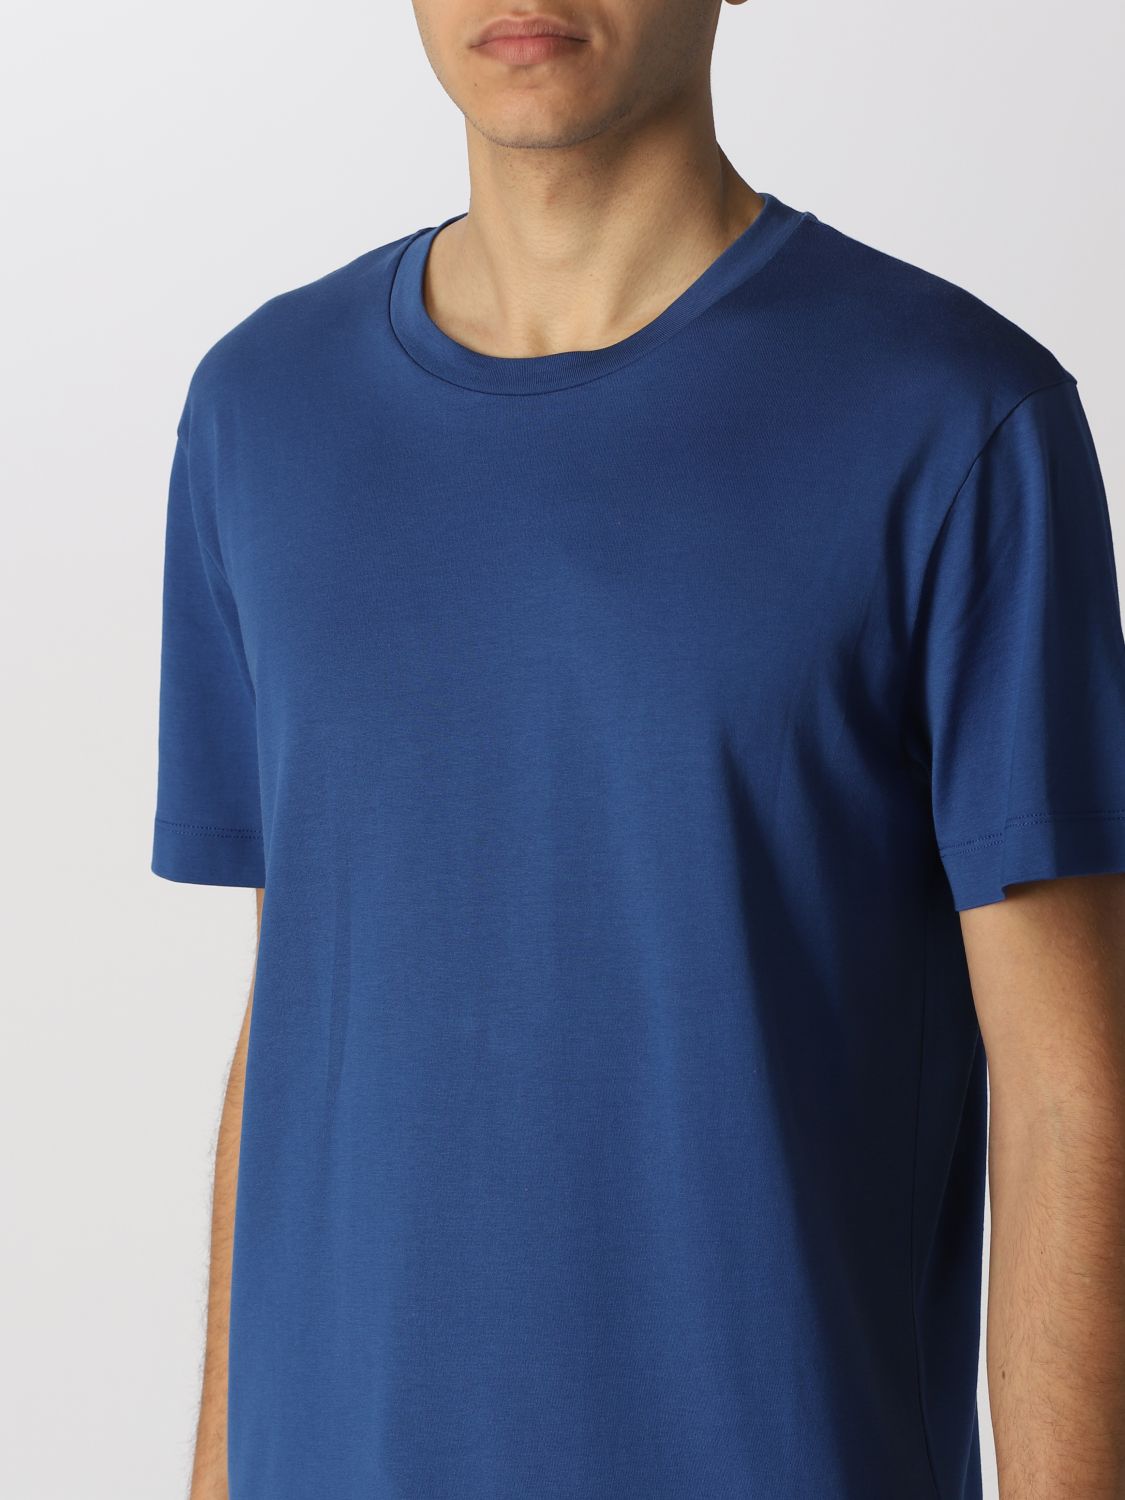 Camiseta Roberto Collina: Camiseta hombre Roberto Collina azul oscuro 3